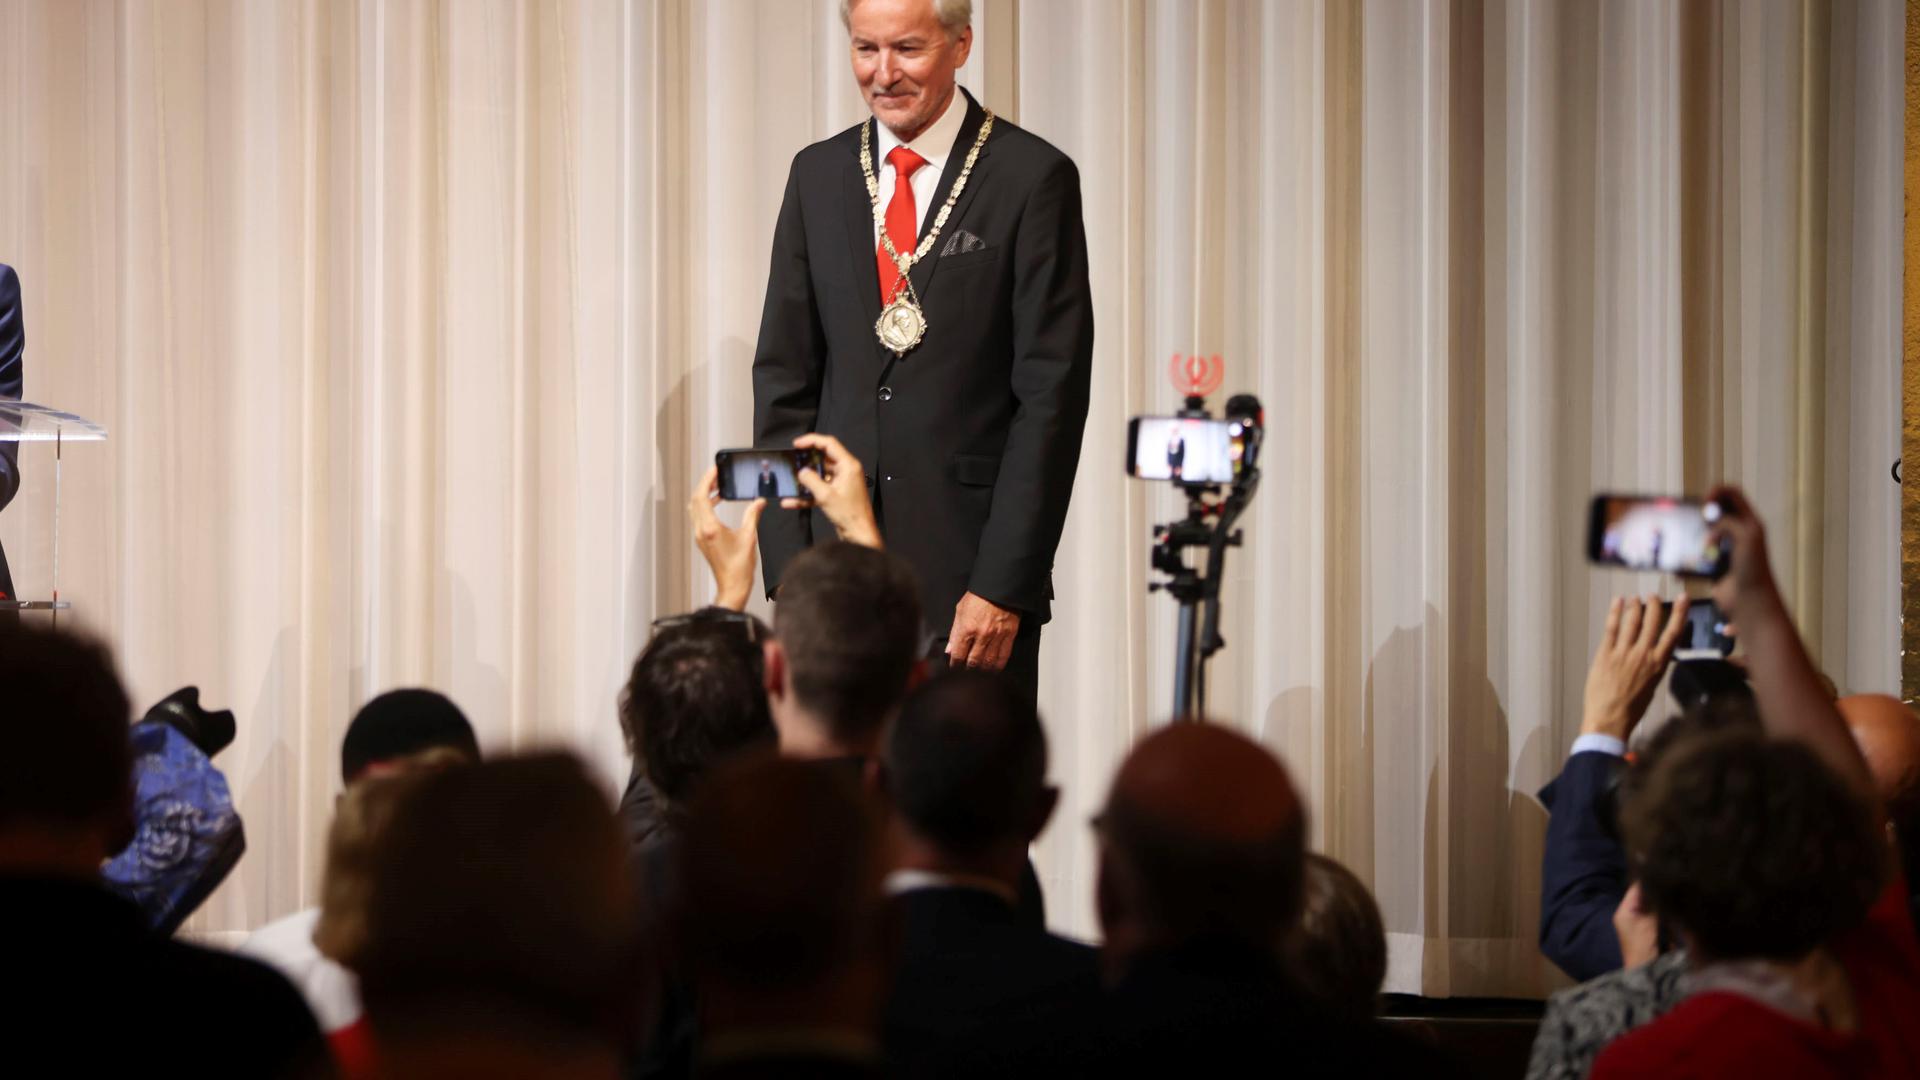 Oberbürgermeister Späth steht auf einer Bühne, lächelt und wird von vielen Personen fotografiert.